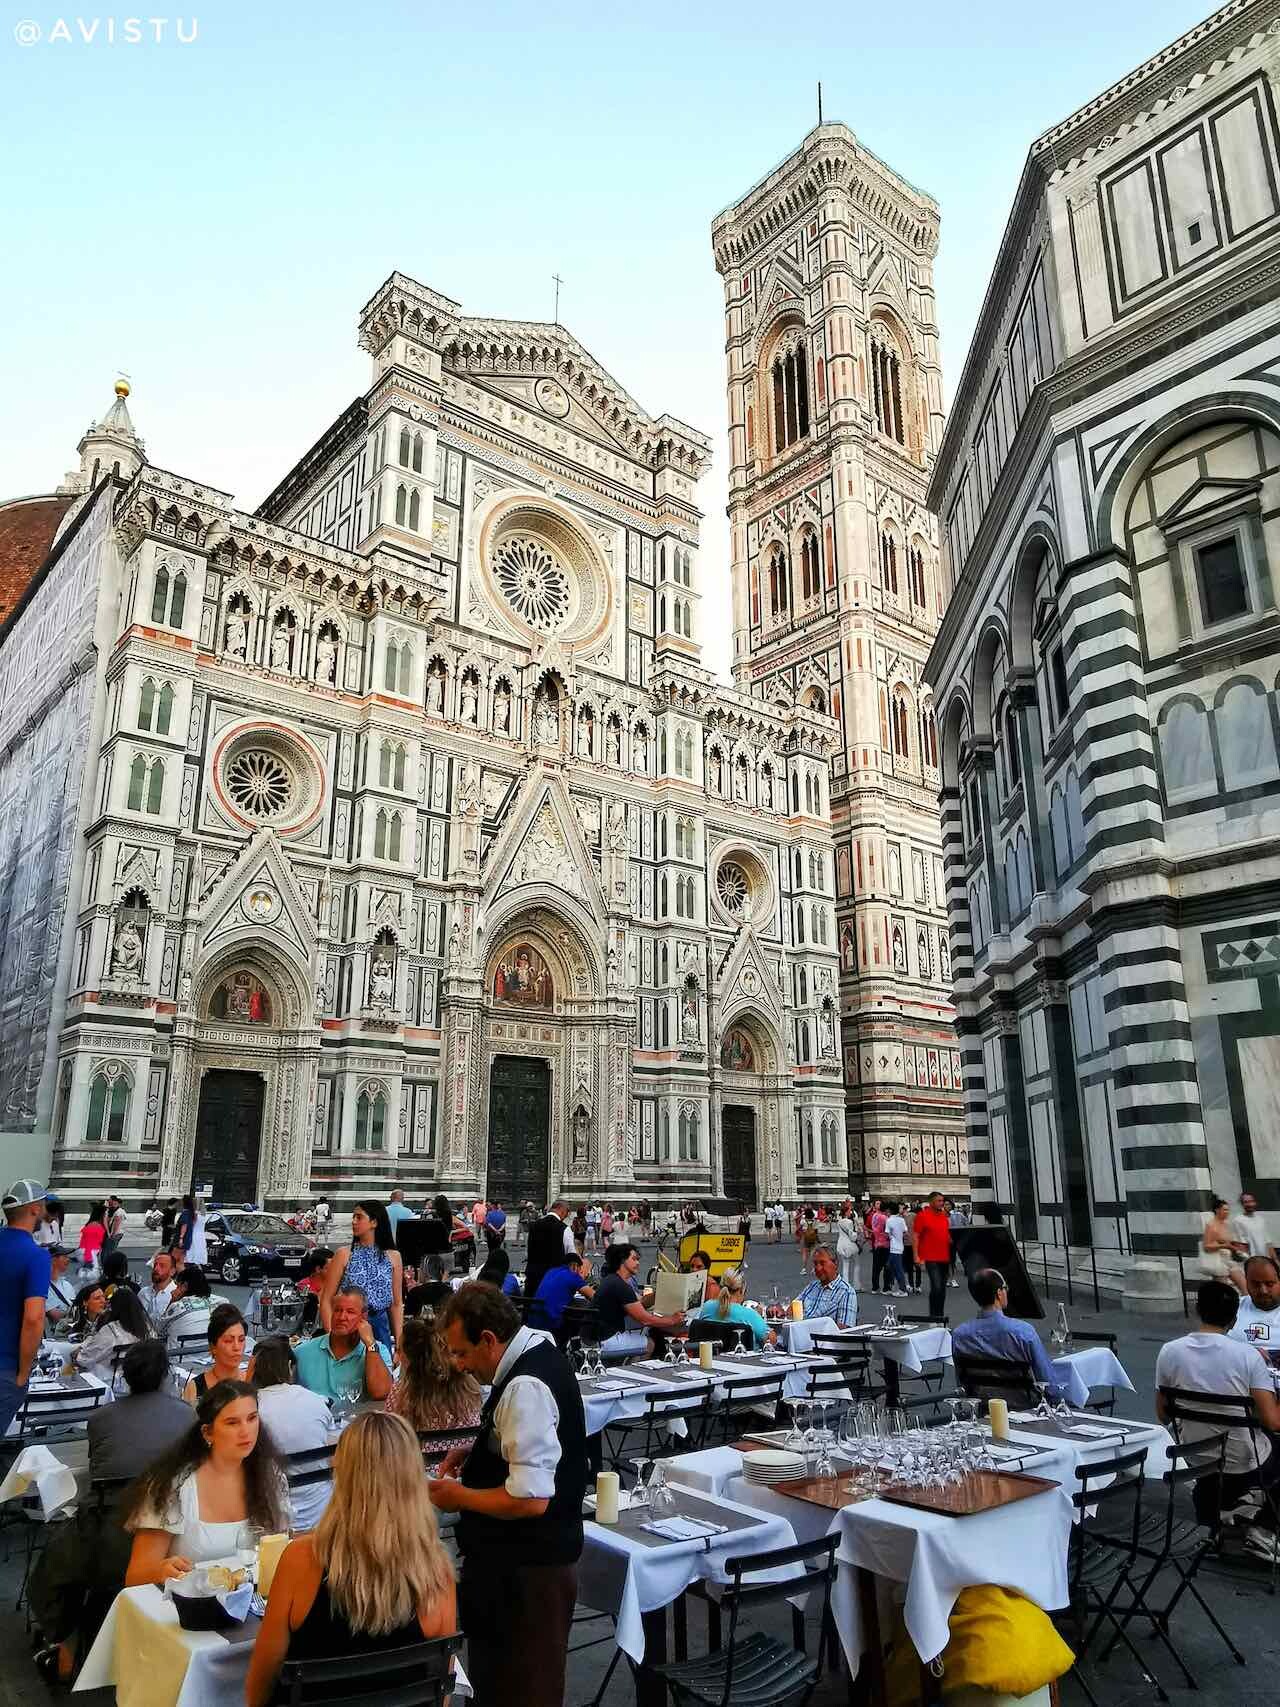 La Catedral de Florencia, el Baptisterio y el Campanario en la Piazza del Duomo [(c) Foto: @avistu]]